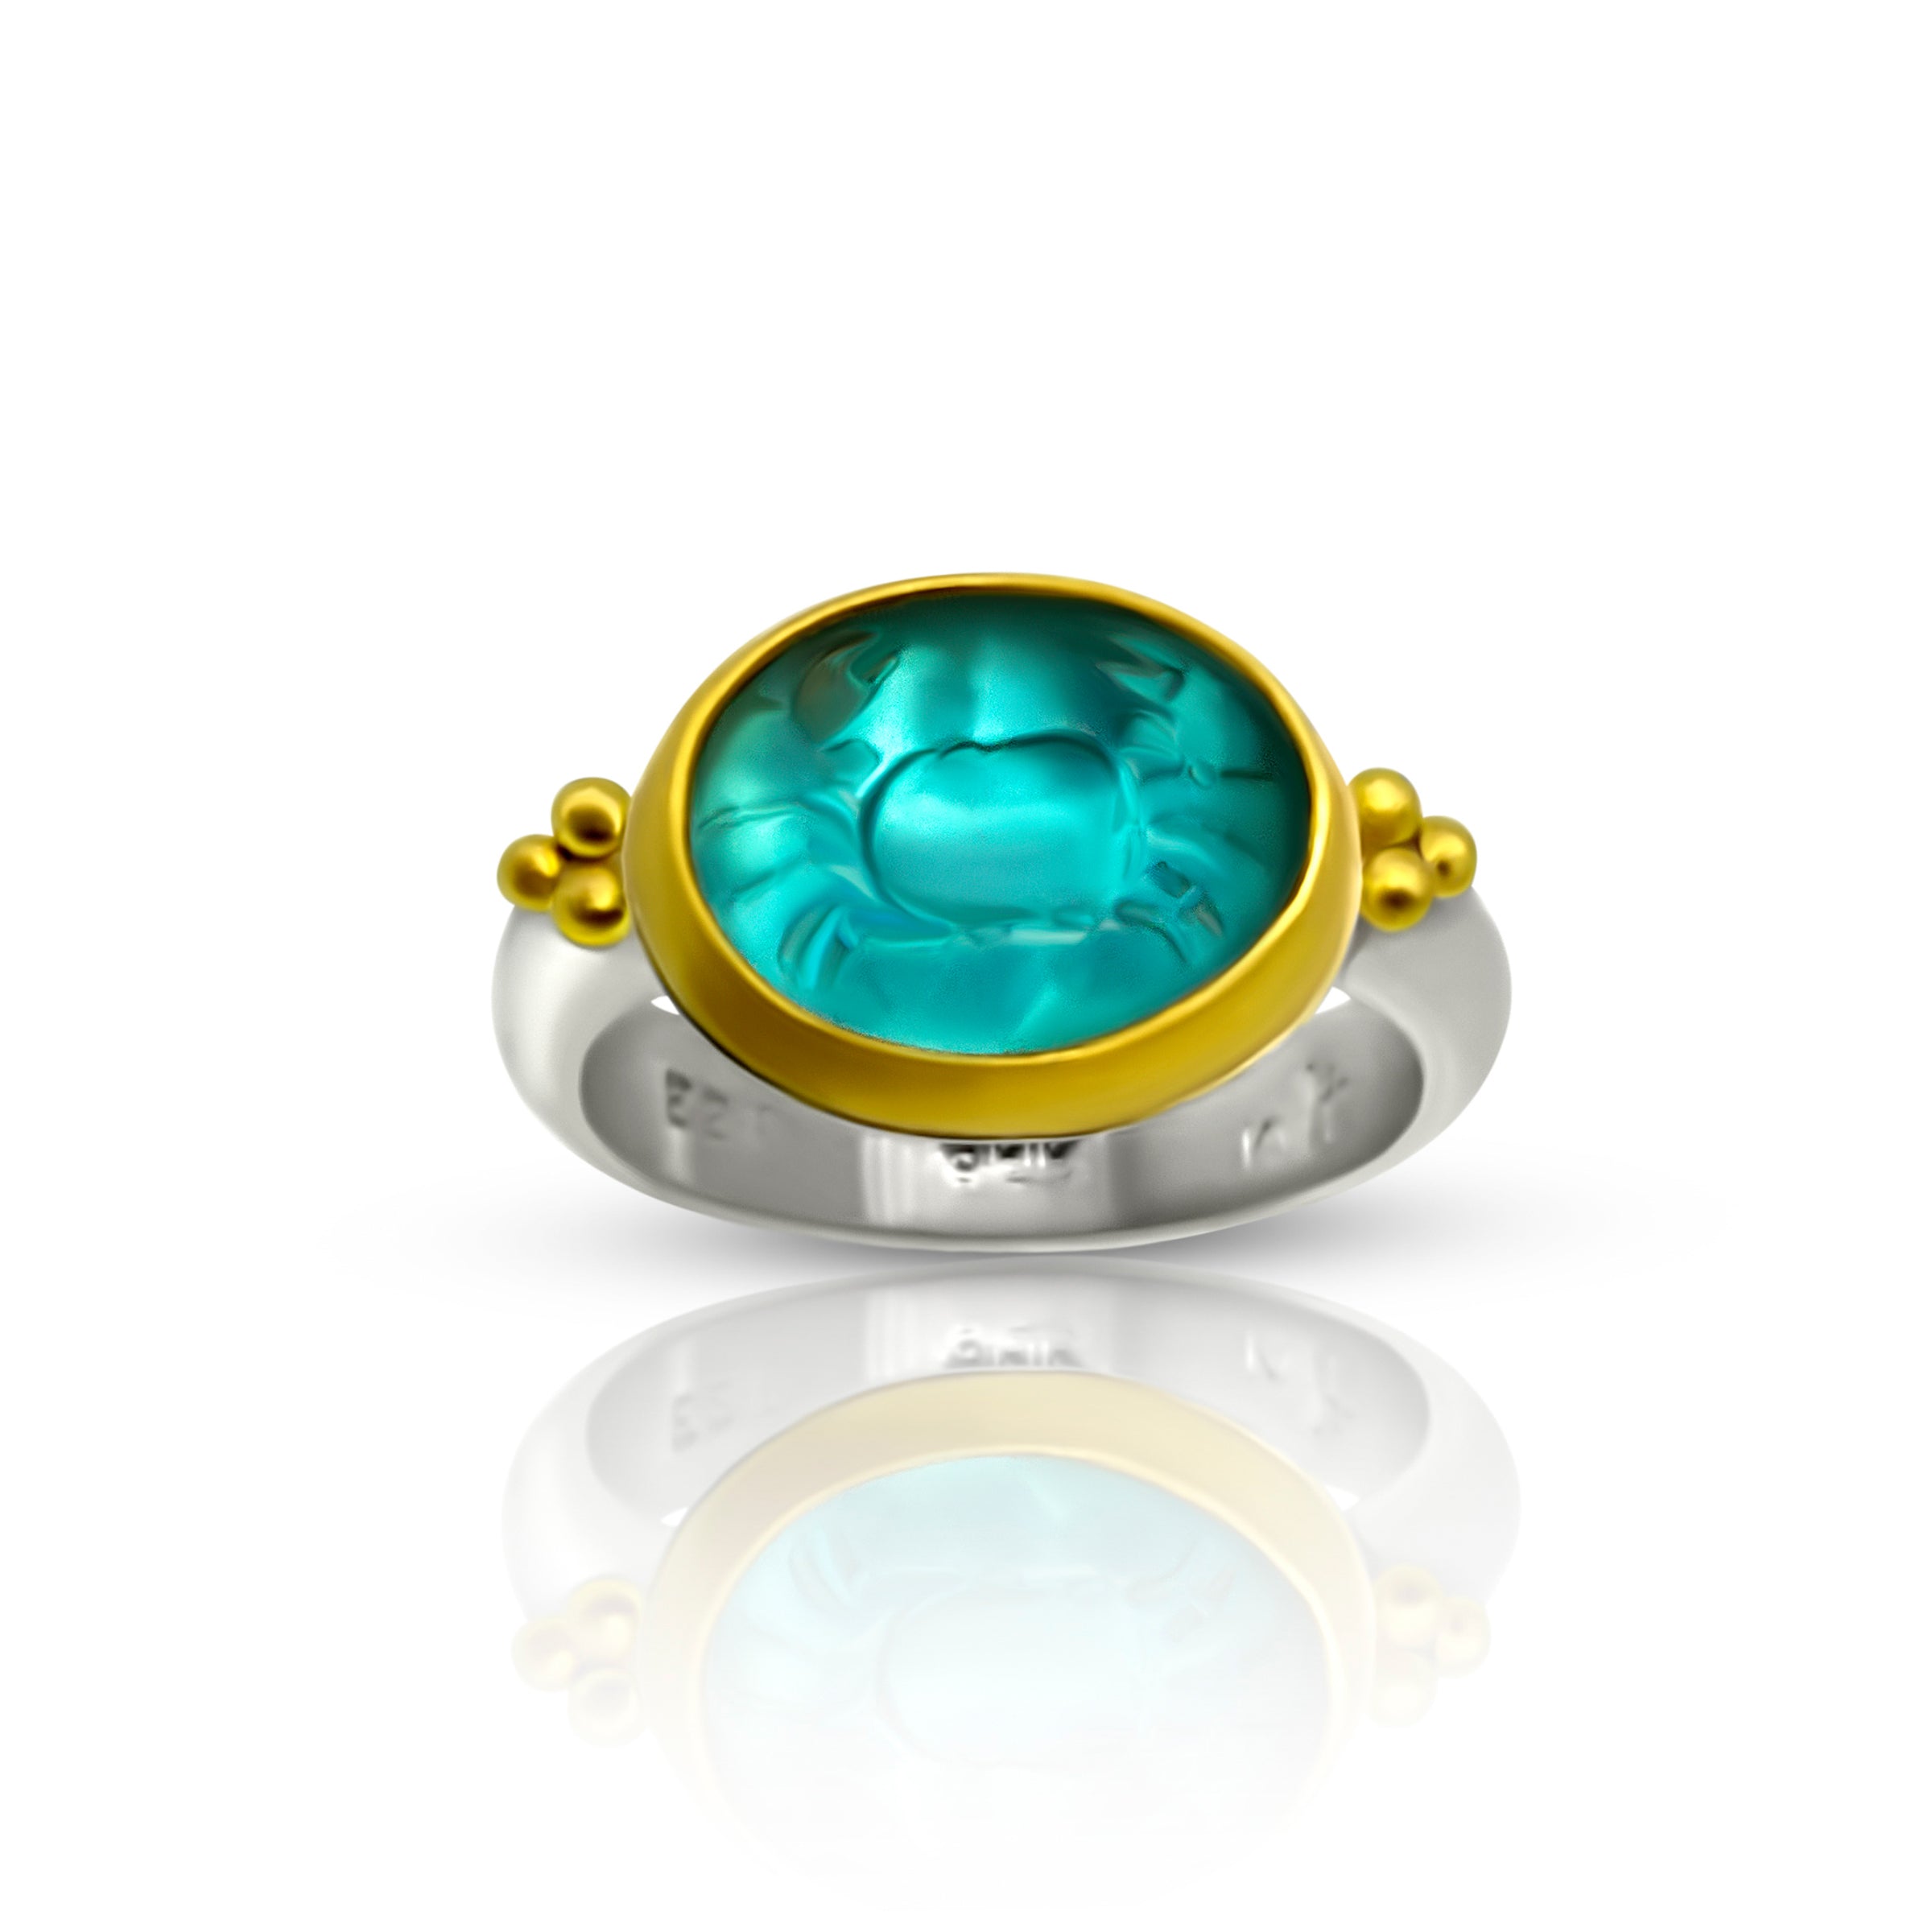 Intaglio jewelry - ladygasw